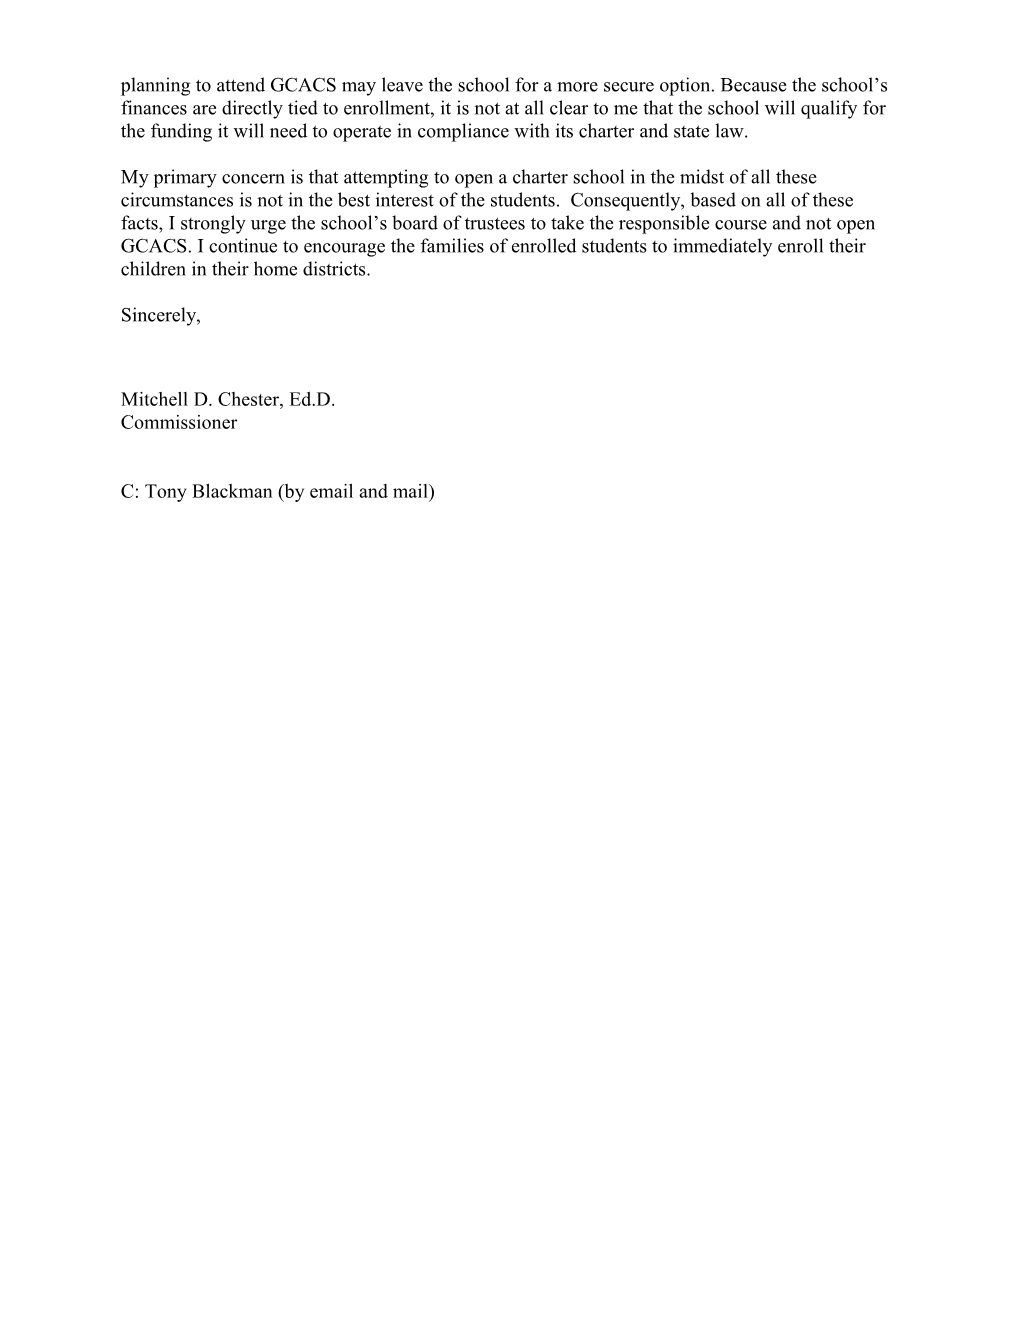 Commissioner's September 22 Letter to GCACS